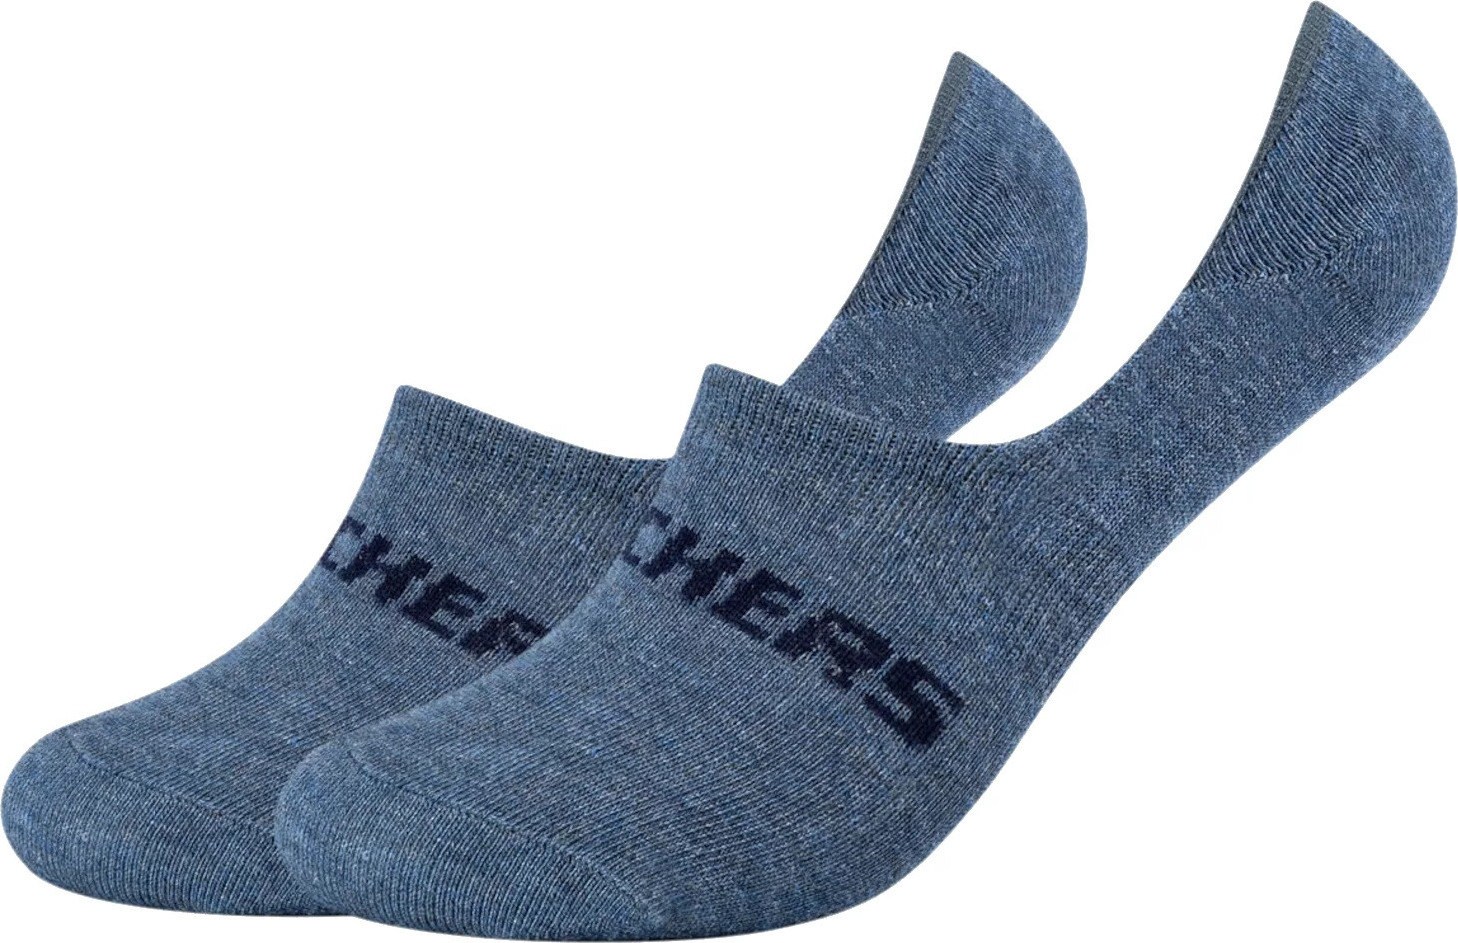 Tmavě modré nízké ponožky - 2 páry Skechers 2PPK Mesh Ventilation Footies Socks SK44008-5500 Velikost: 39-42